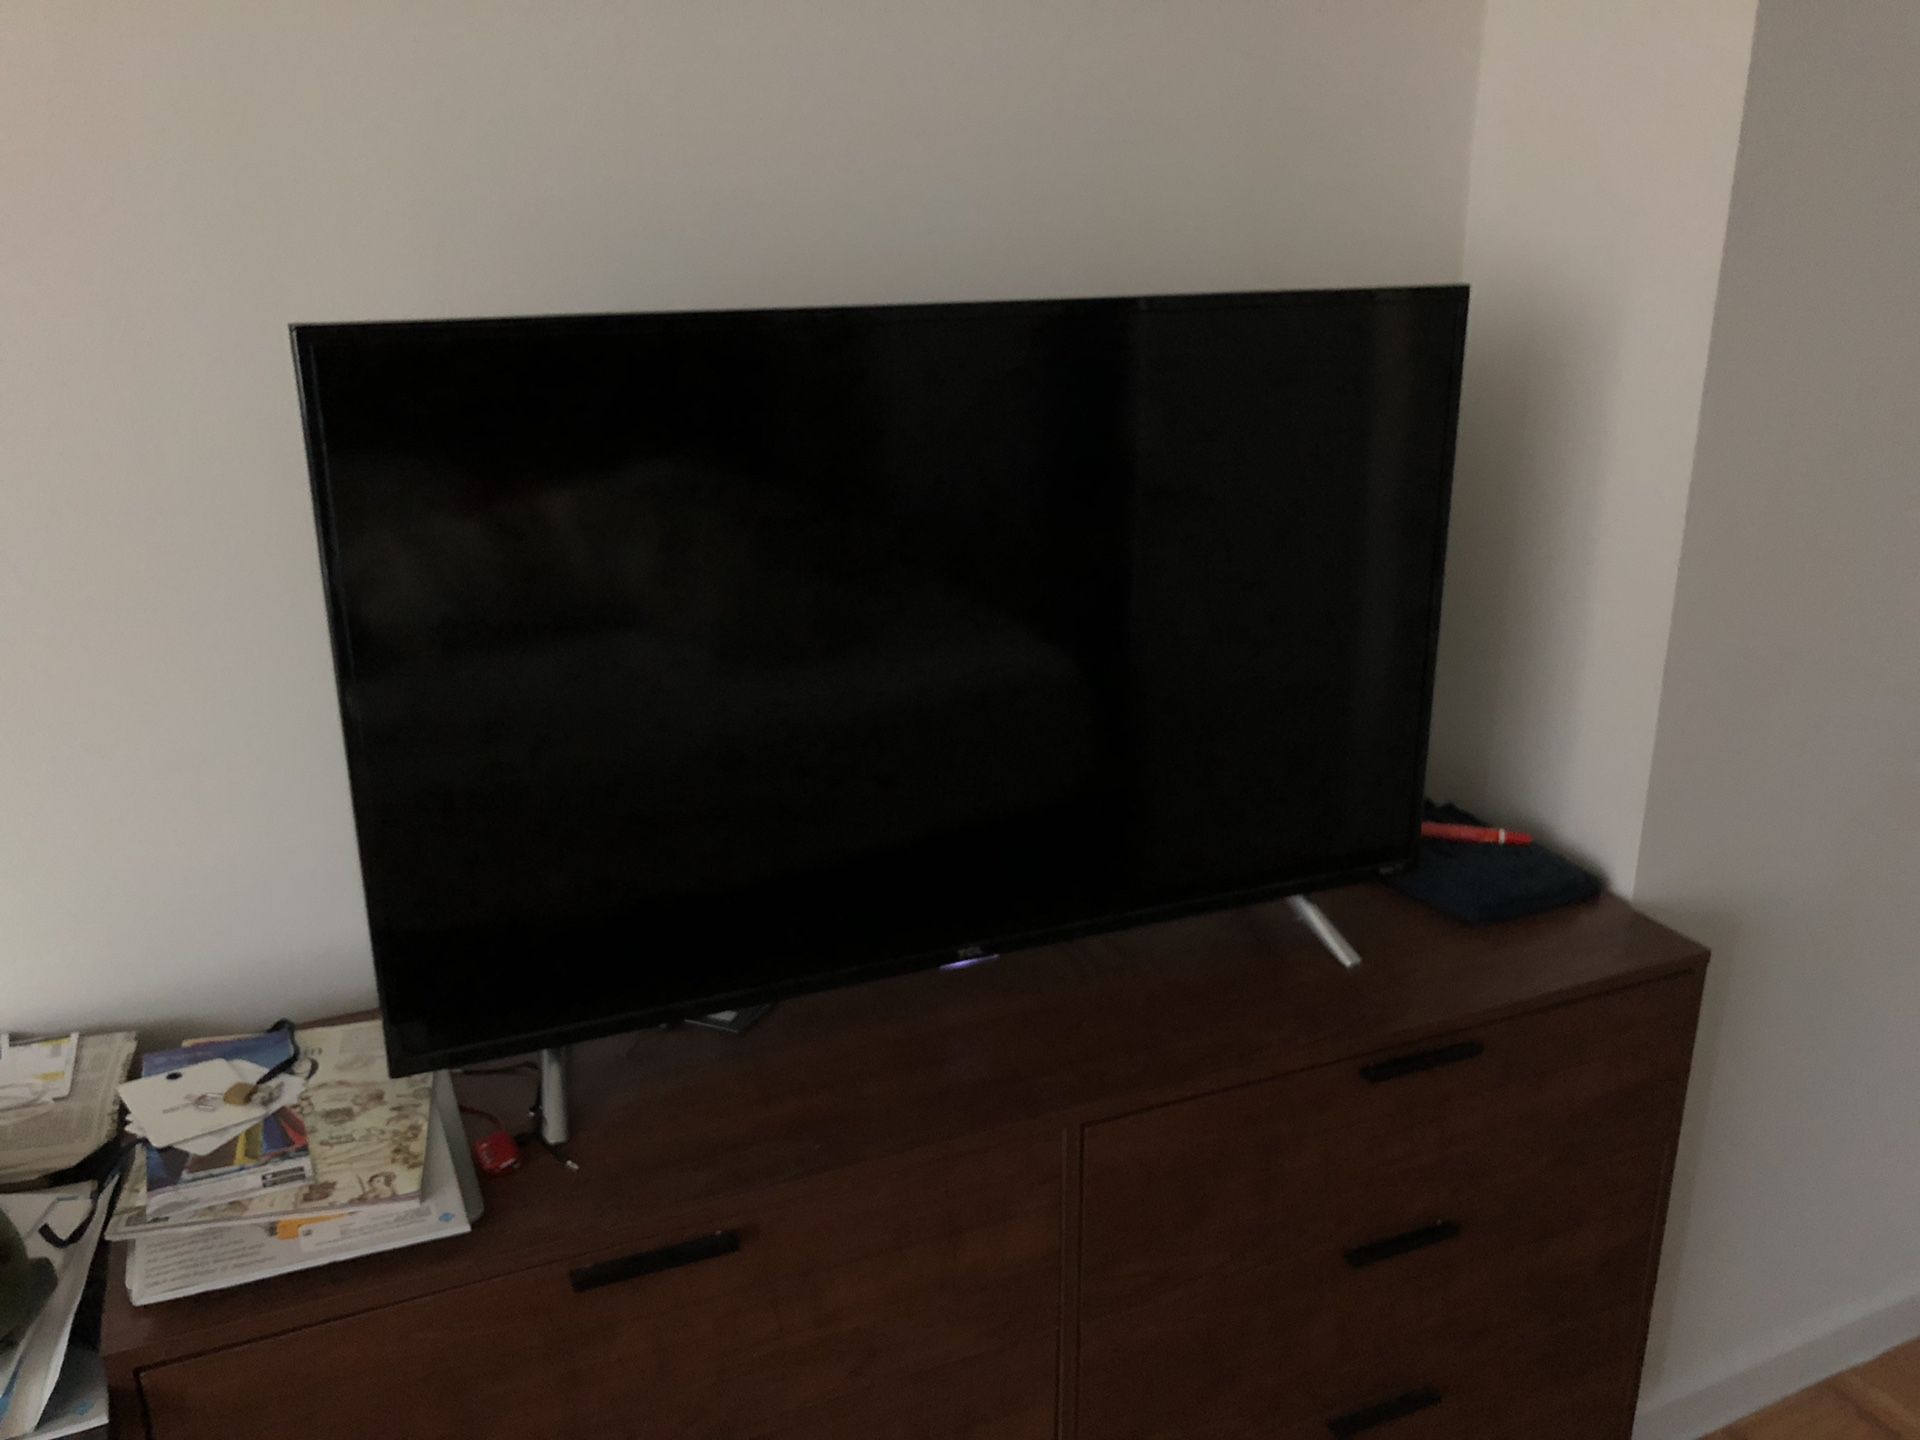 49-inch 4k ultra HD Roku smart tv